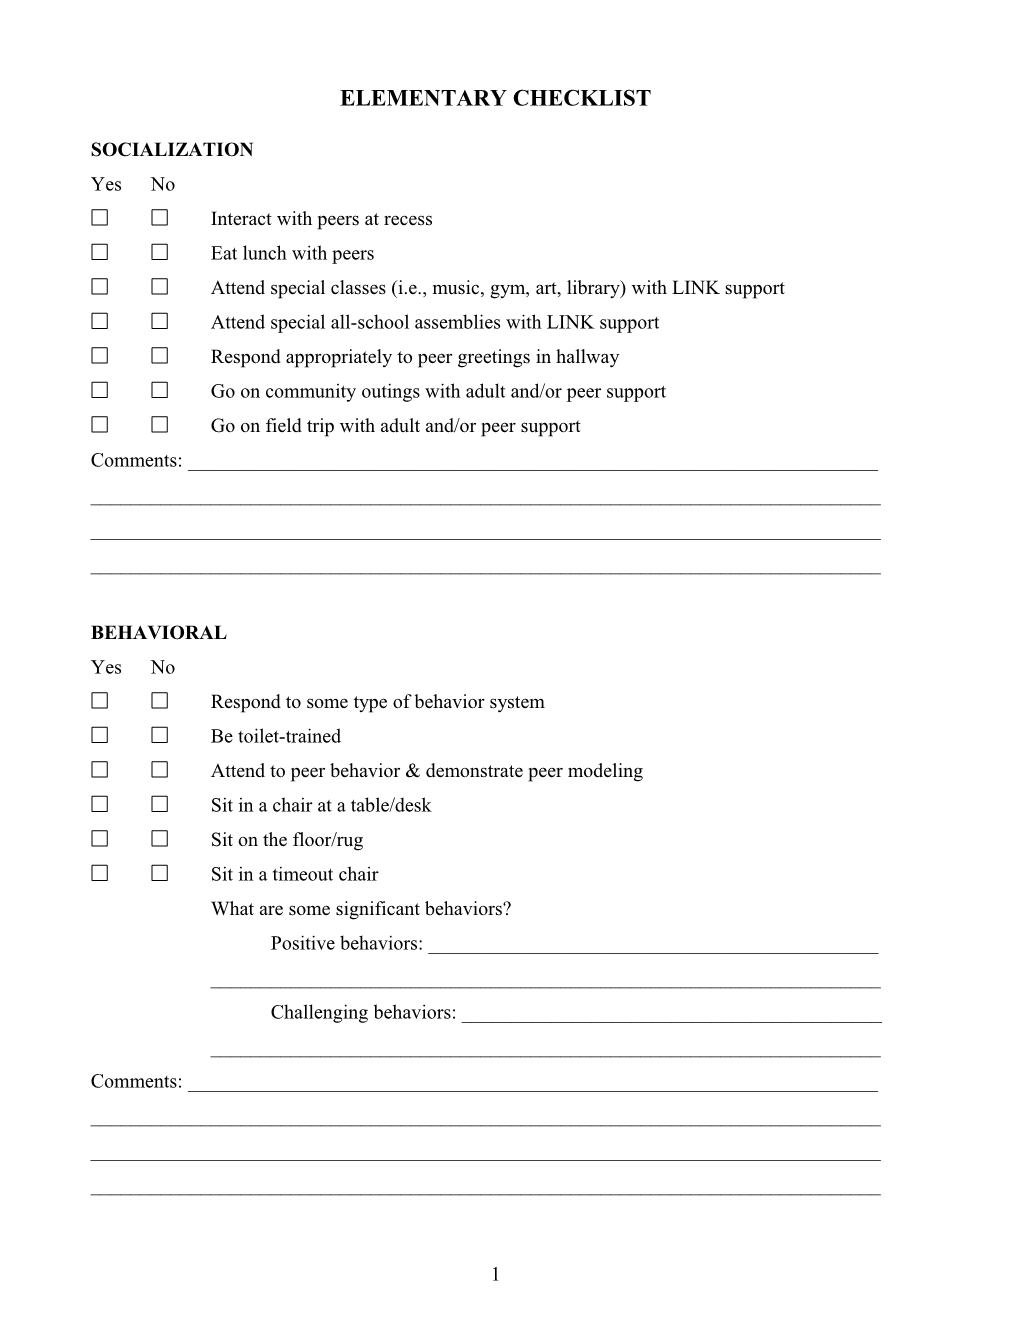 Elementary Checklist